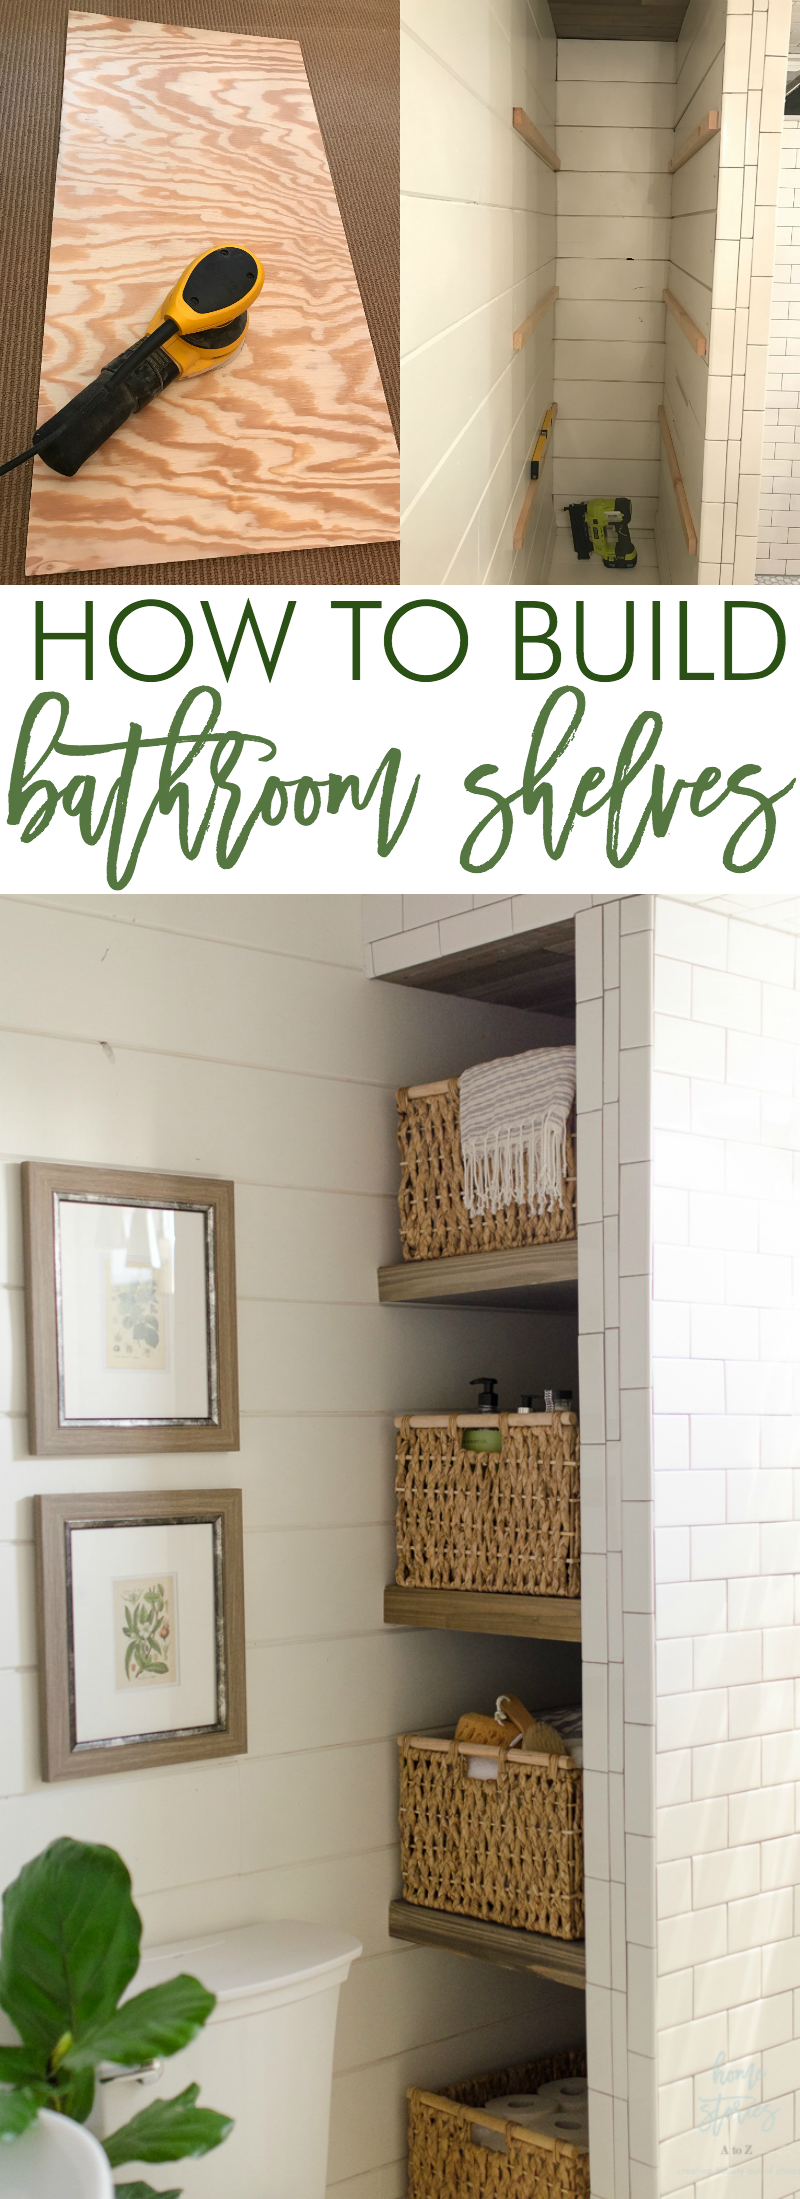 How to build bathroom shelves next to shower inexpensive diy bathroom shelves